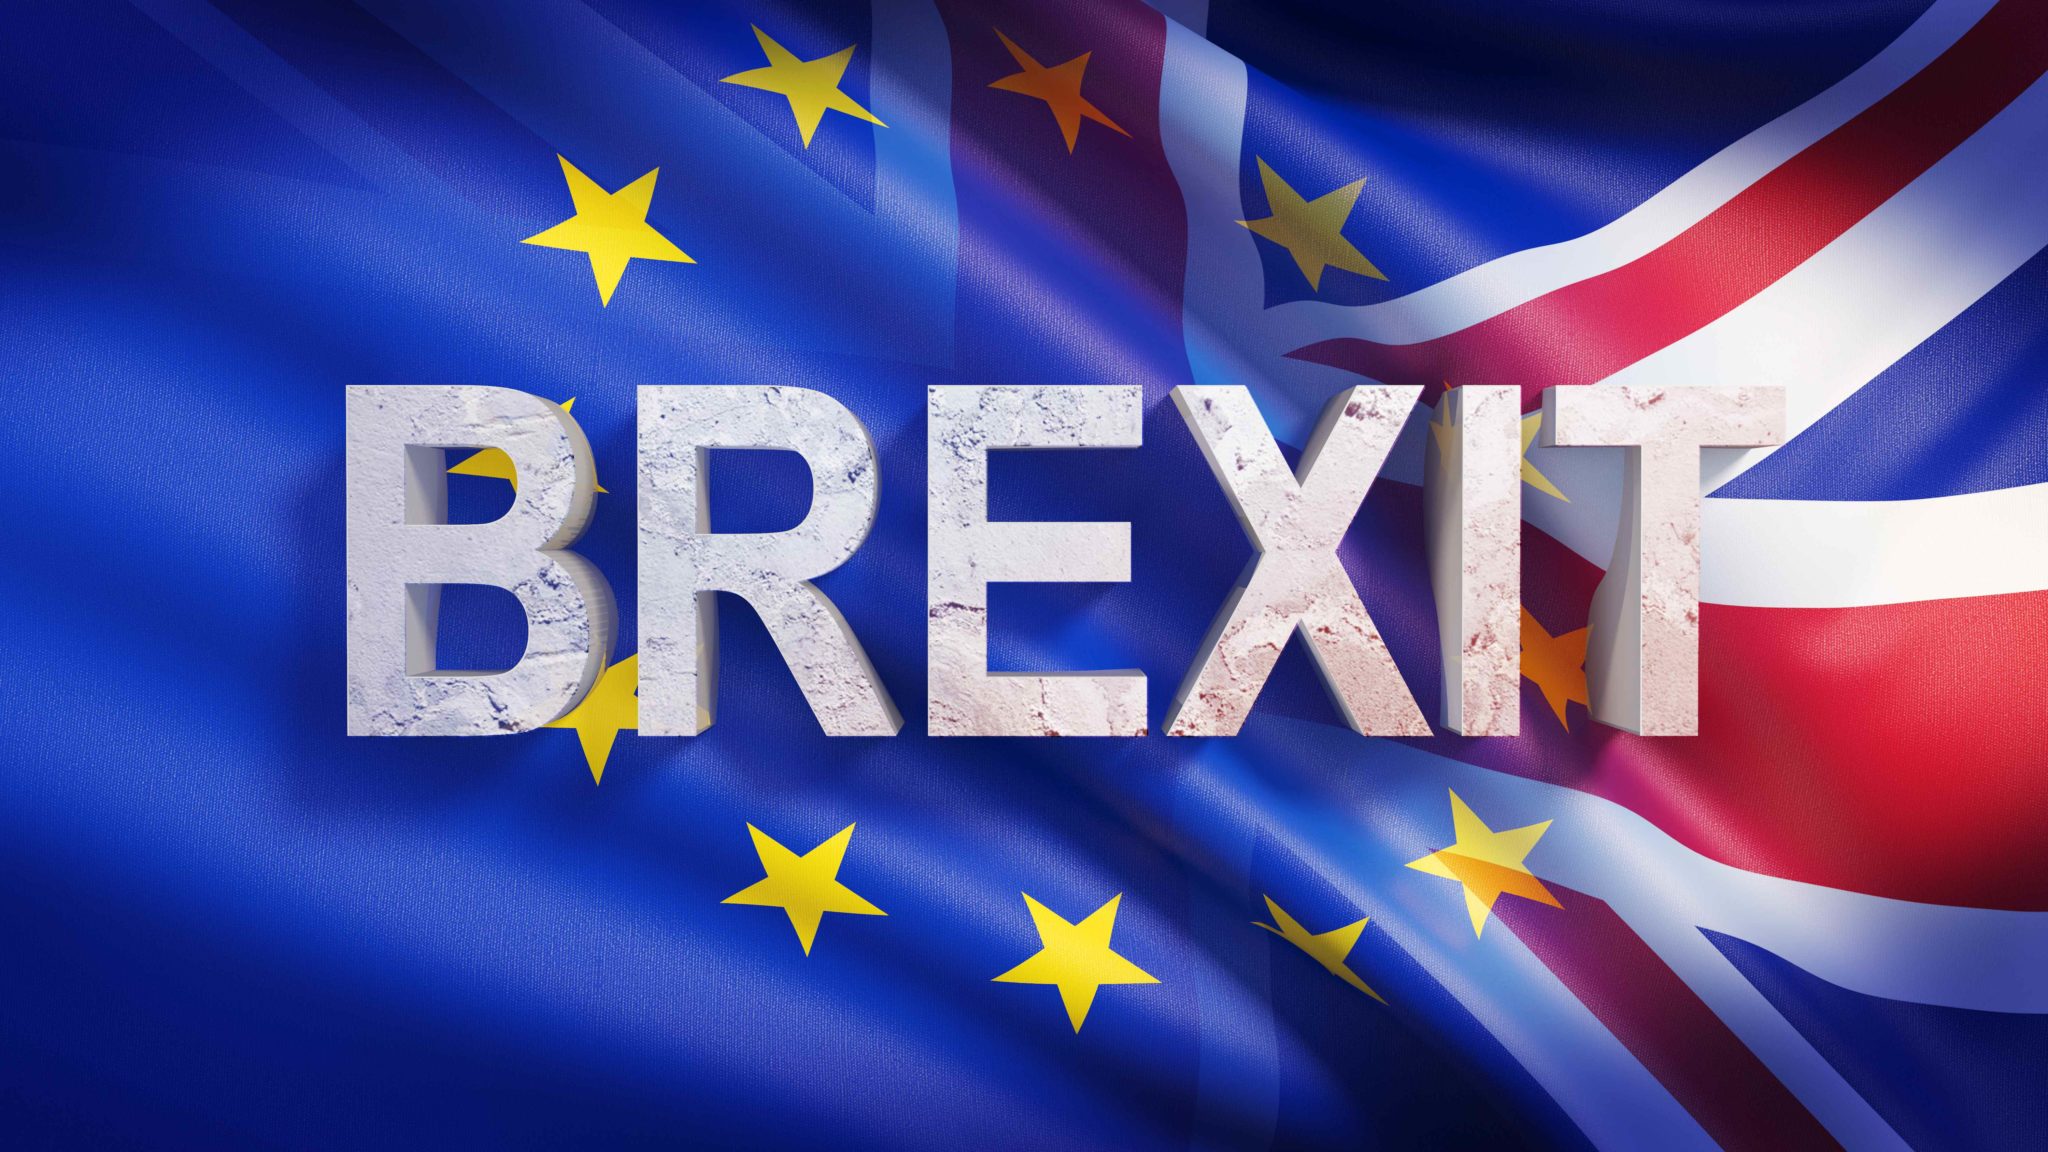 Drapeau de l'Europe et du Royaume-Uni avec la mention Brexit